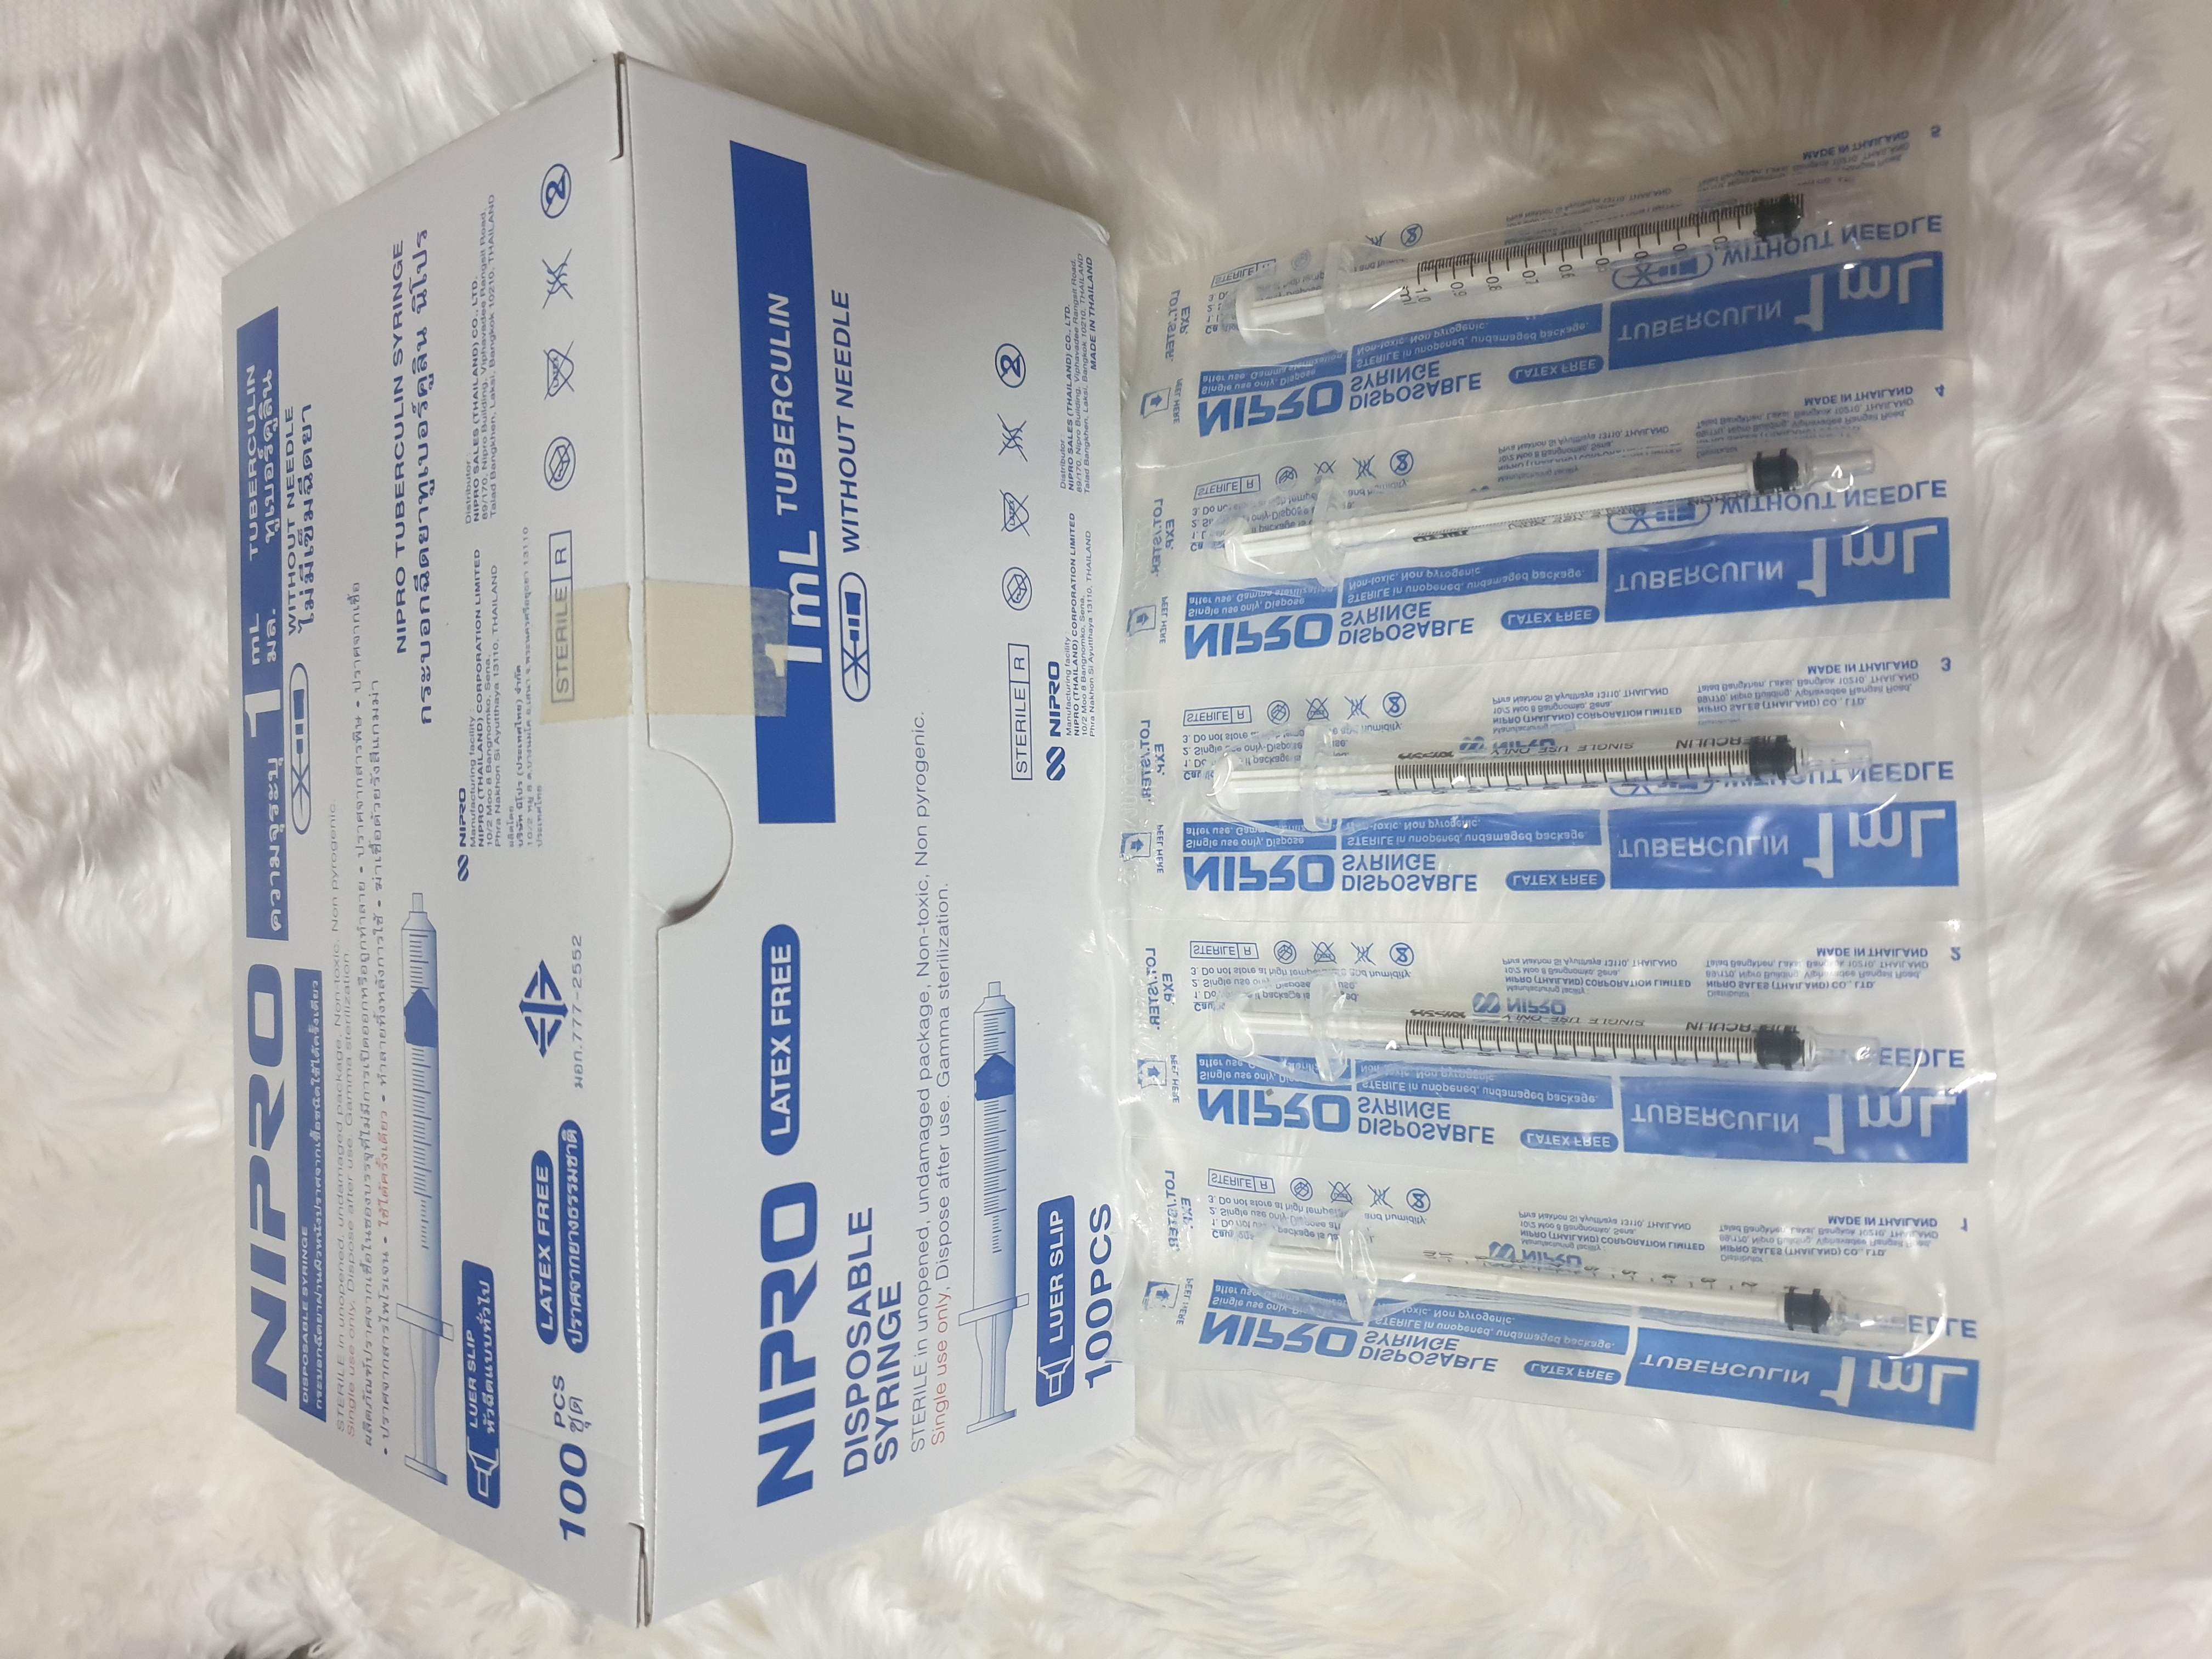 Syringe (Nipro) size 1 ml (Wihout Needle)